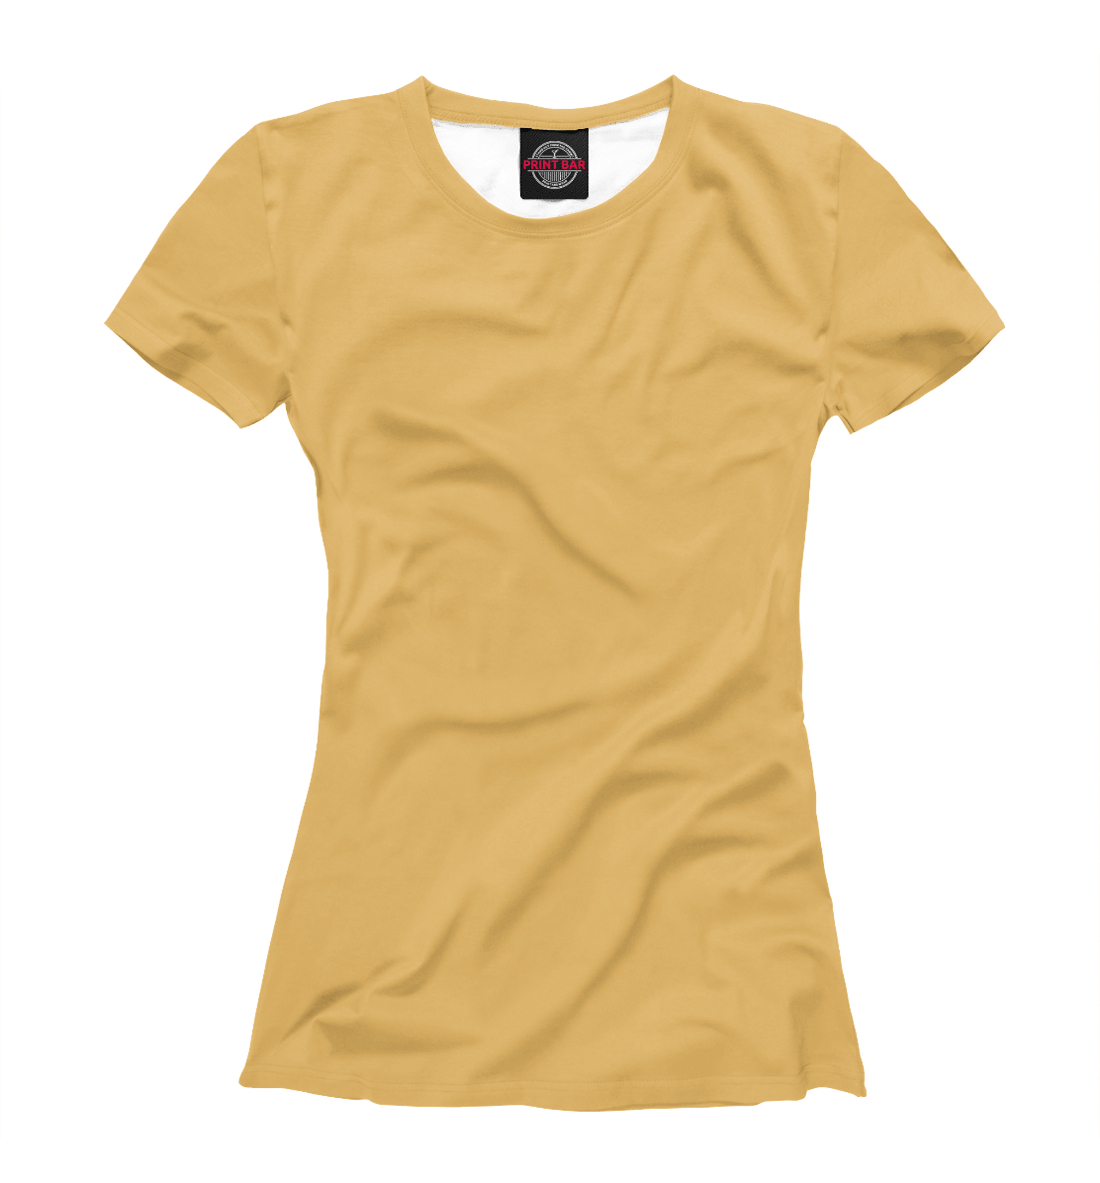 Футболка Цвет Охра желтая для женщин, артикул: CLR-662247-fut-1mp